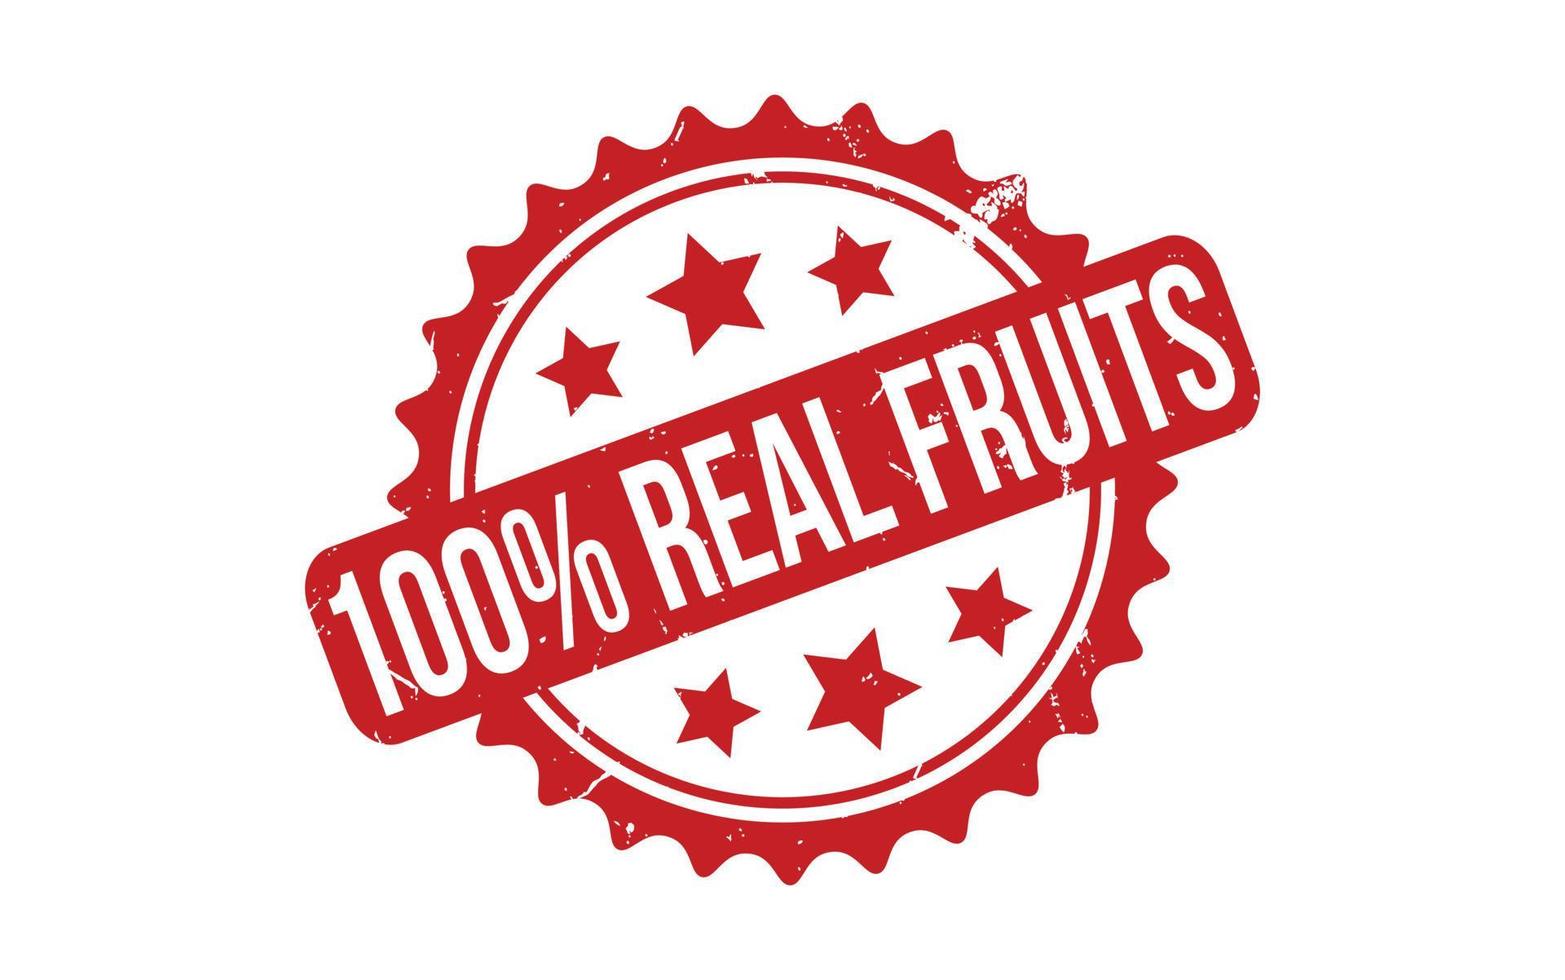 100 procent echt fruit rubber postzegel zegel vector